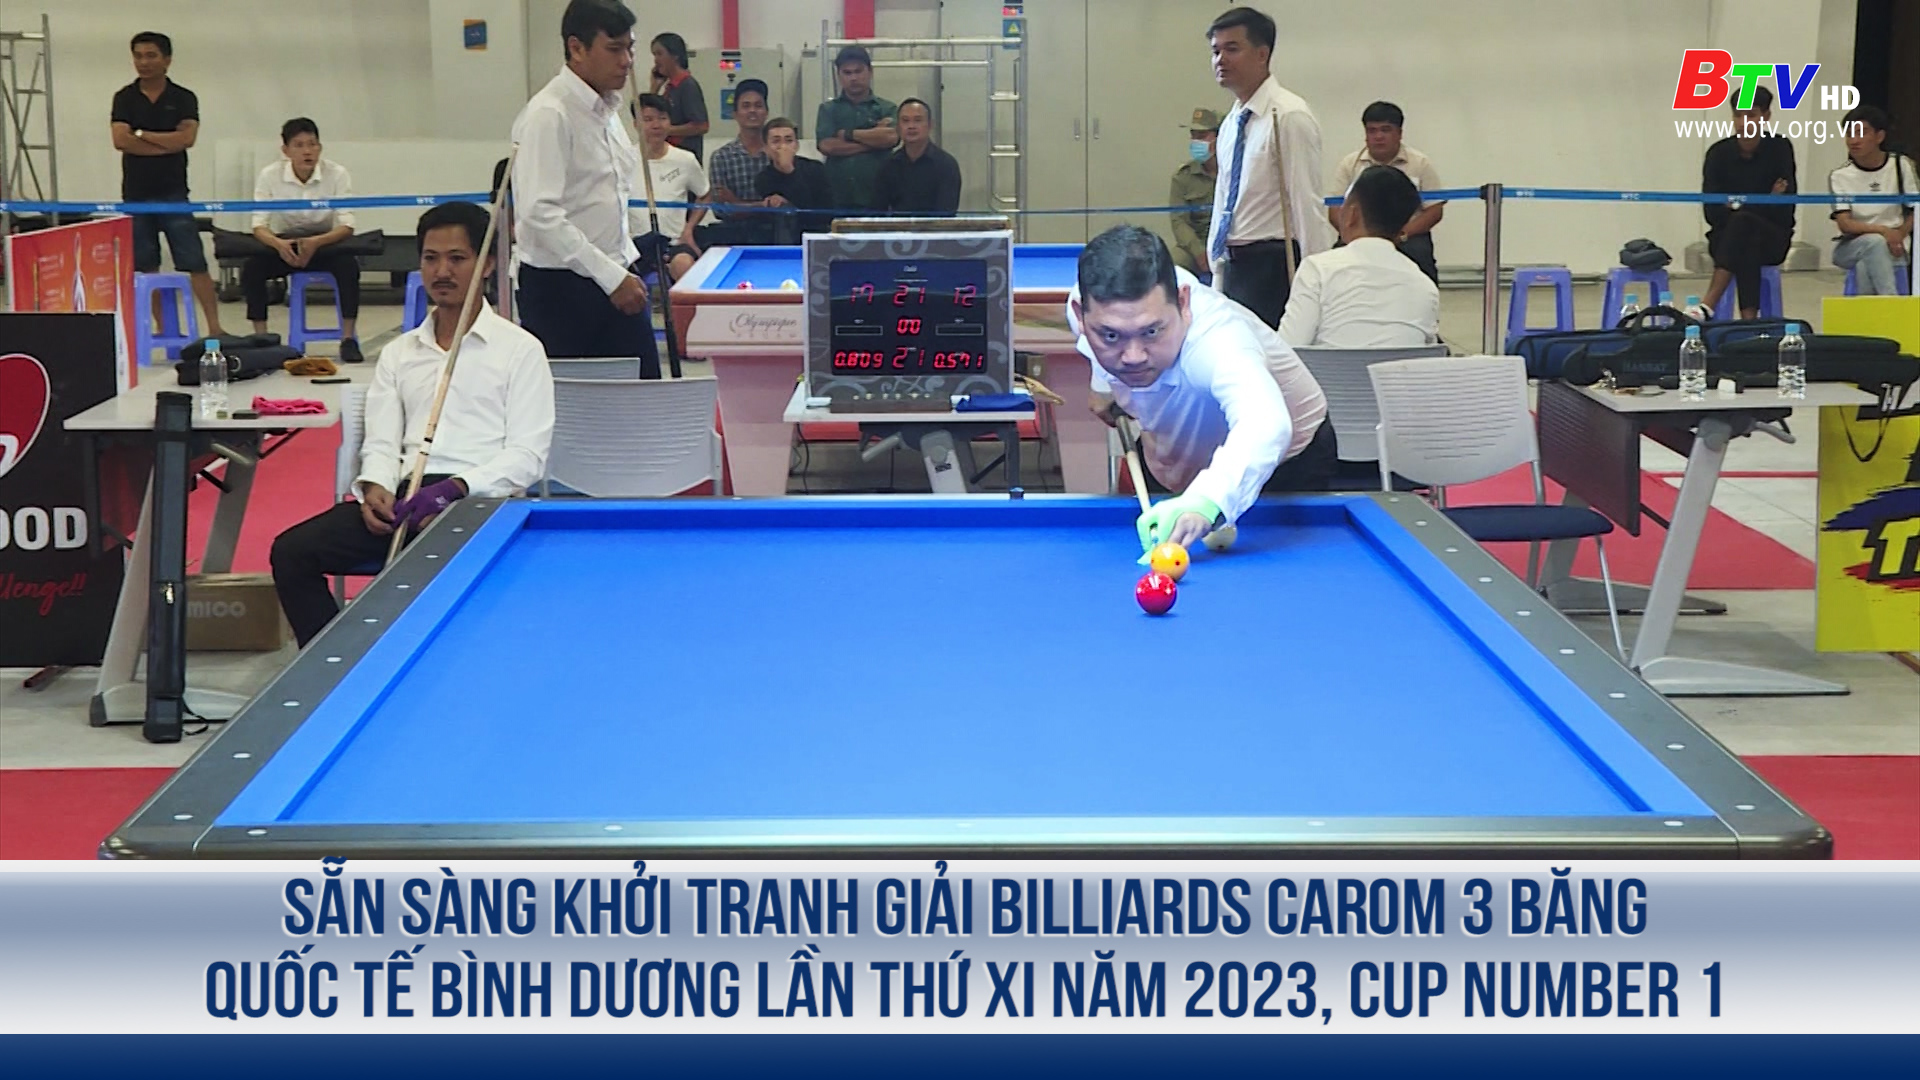 Sẵn sàng khởi tranh Giải Billiards carom 3 băng quốc tế Bình Dương lần thứ XI năm 2023, Cup Number 1